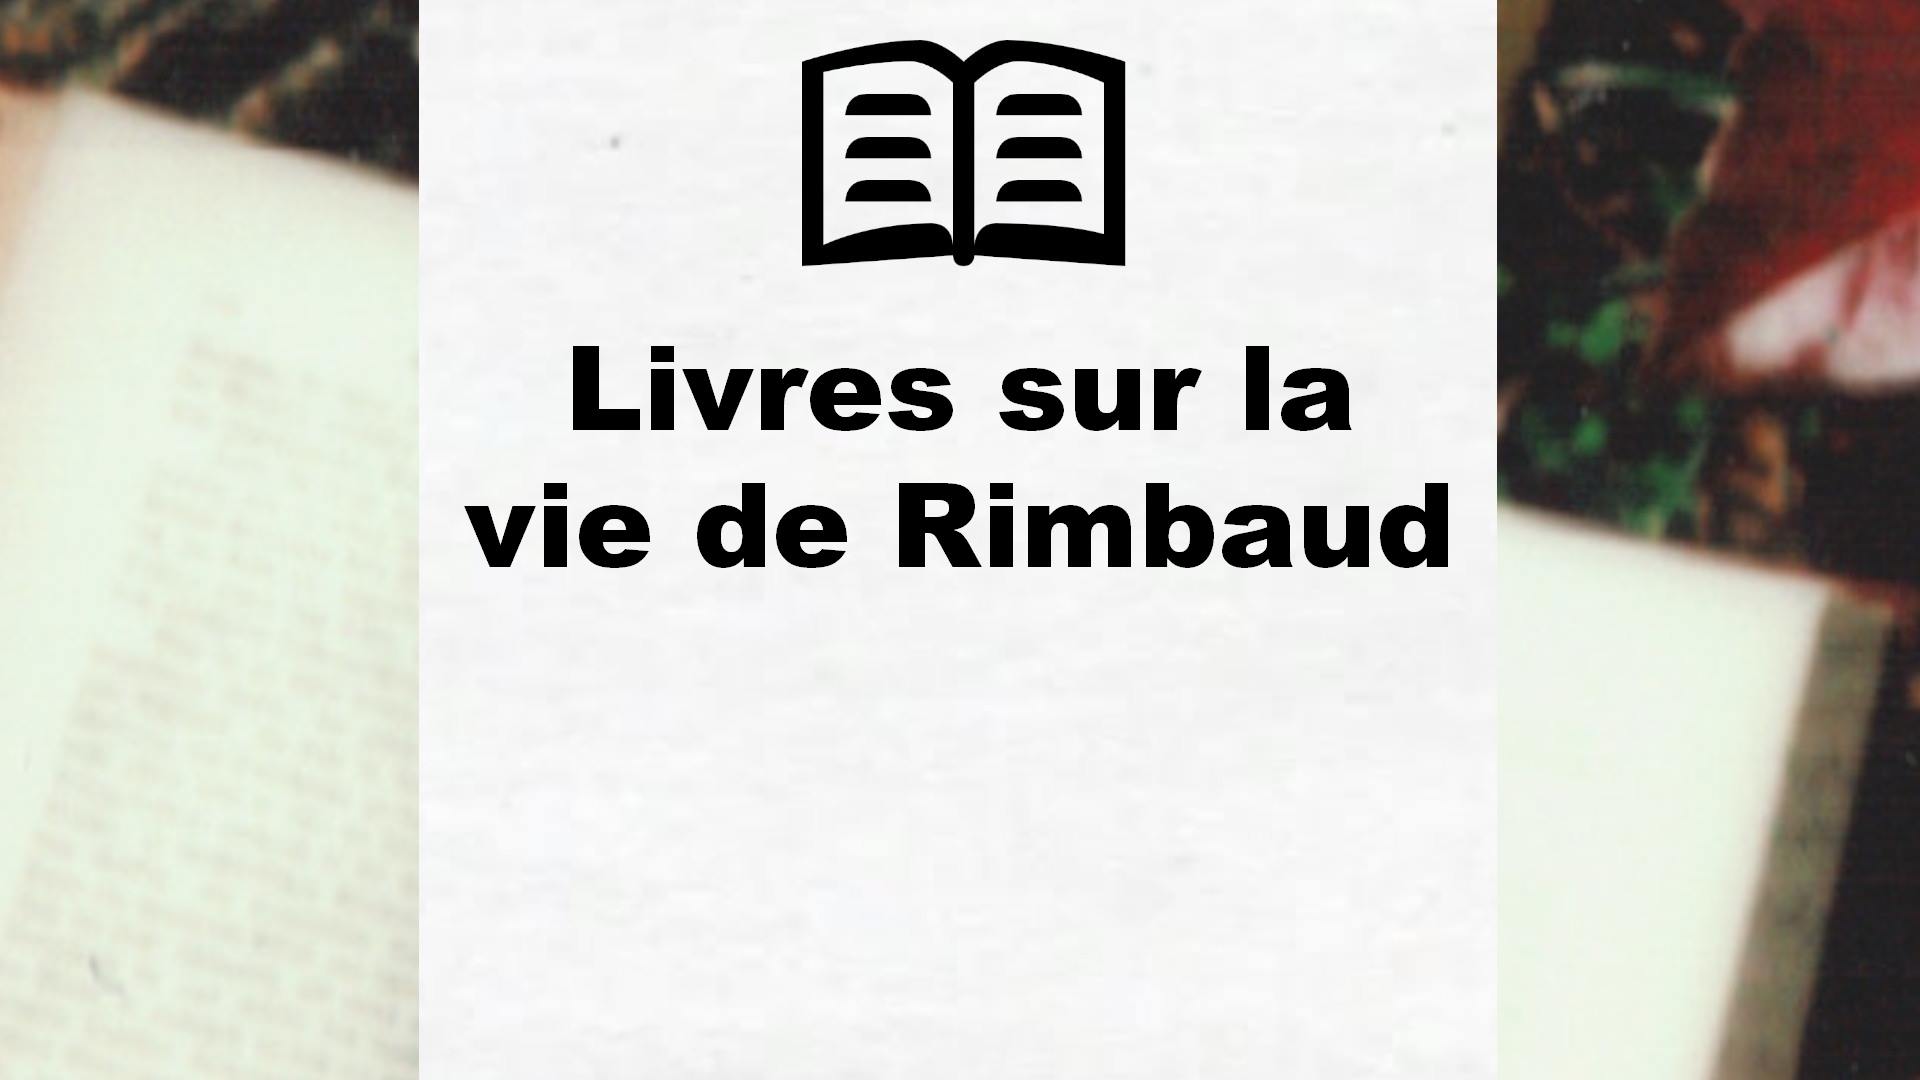 Livres sur la vie de Rimbaud